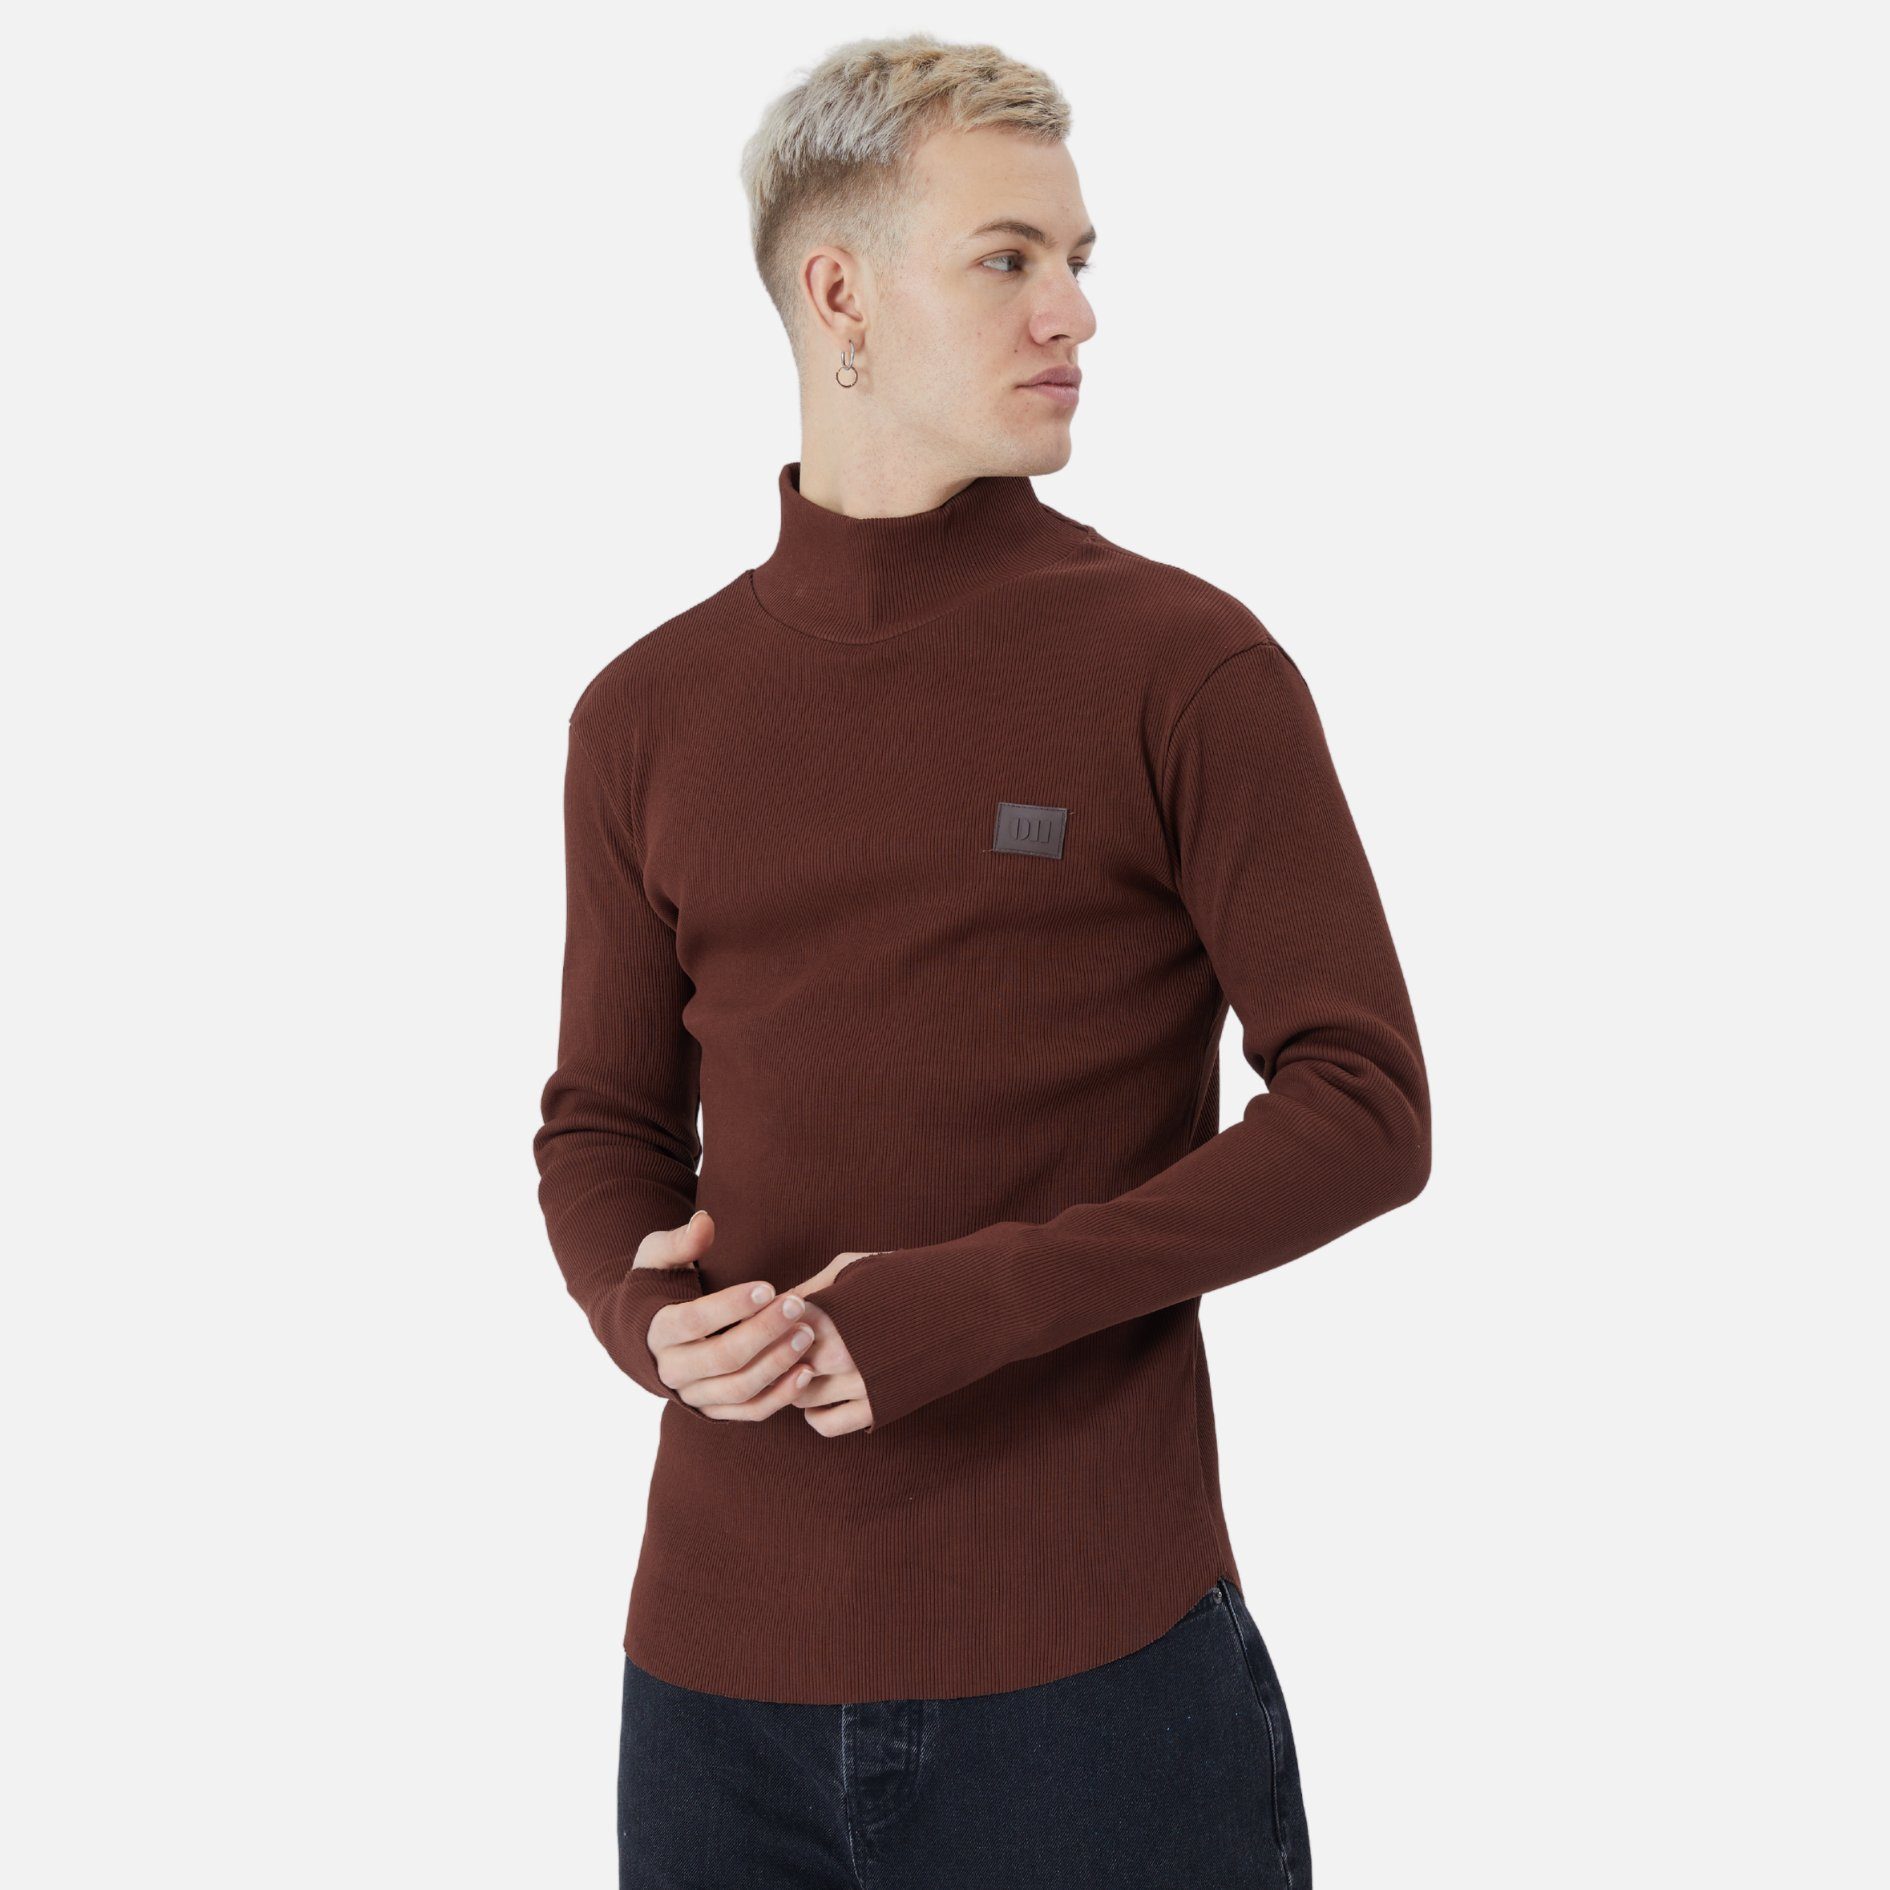 COFI Casuals Sweatshirt Herren Fit Braun Rundhals Regular Pullover Sweatshirt